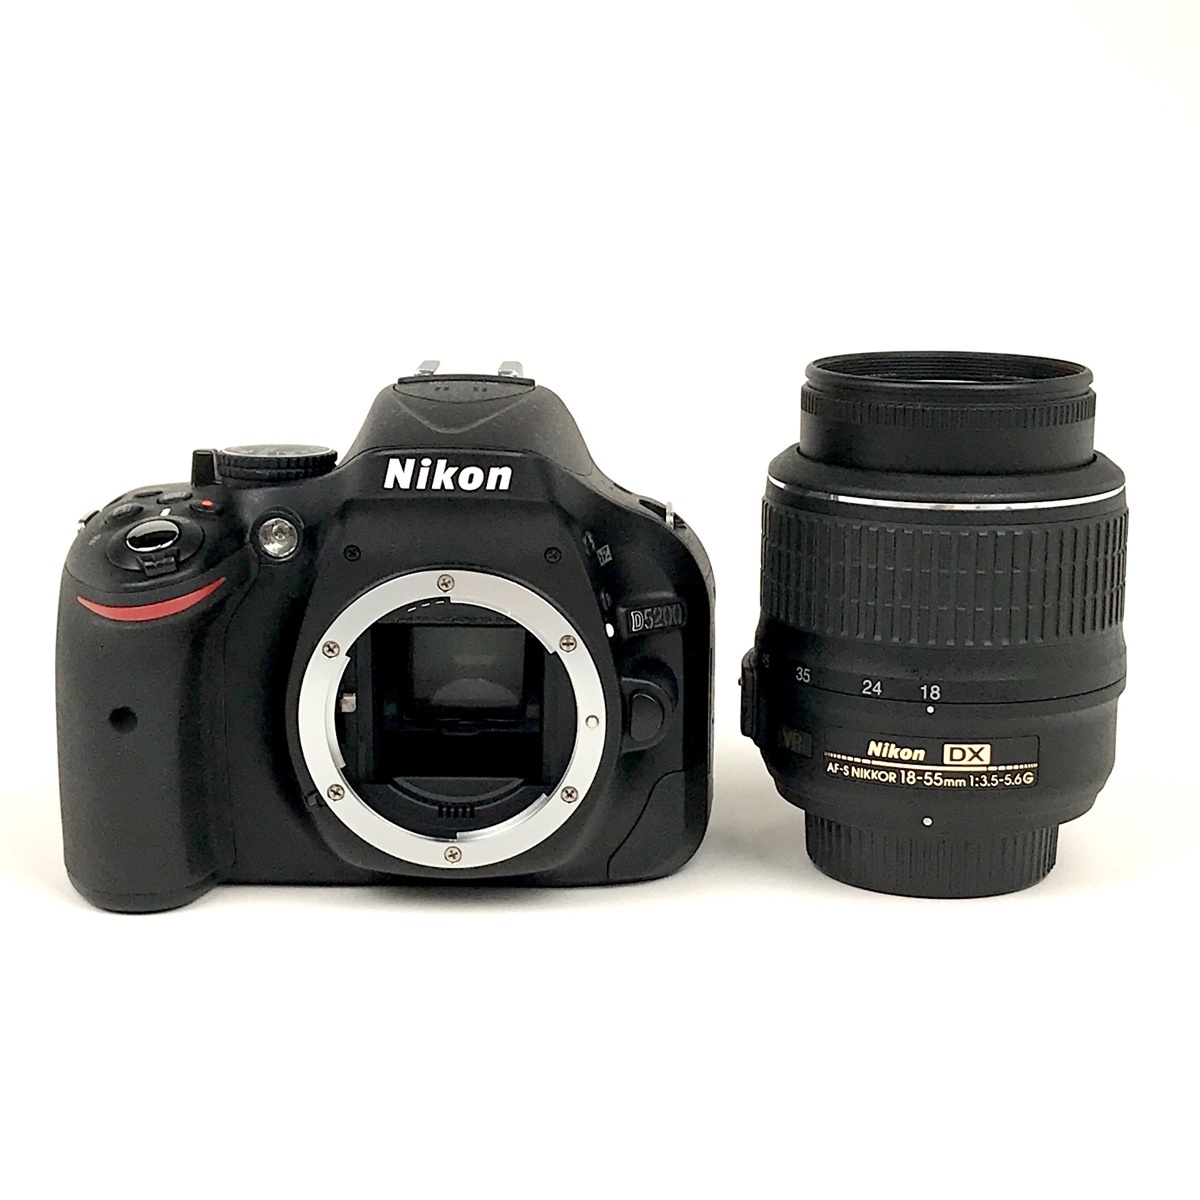 ニコン Nikon D5200 + AF-S DX NIKKOR 18-55mm F3.5-5.6G VR デジタル